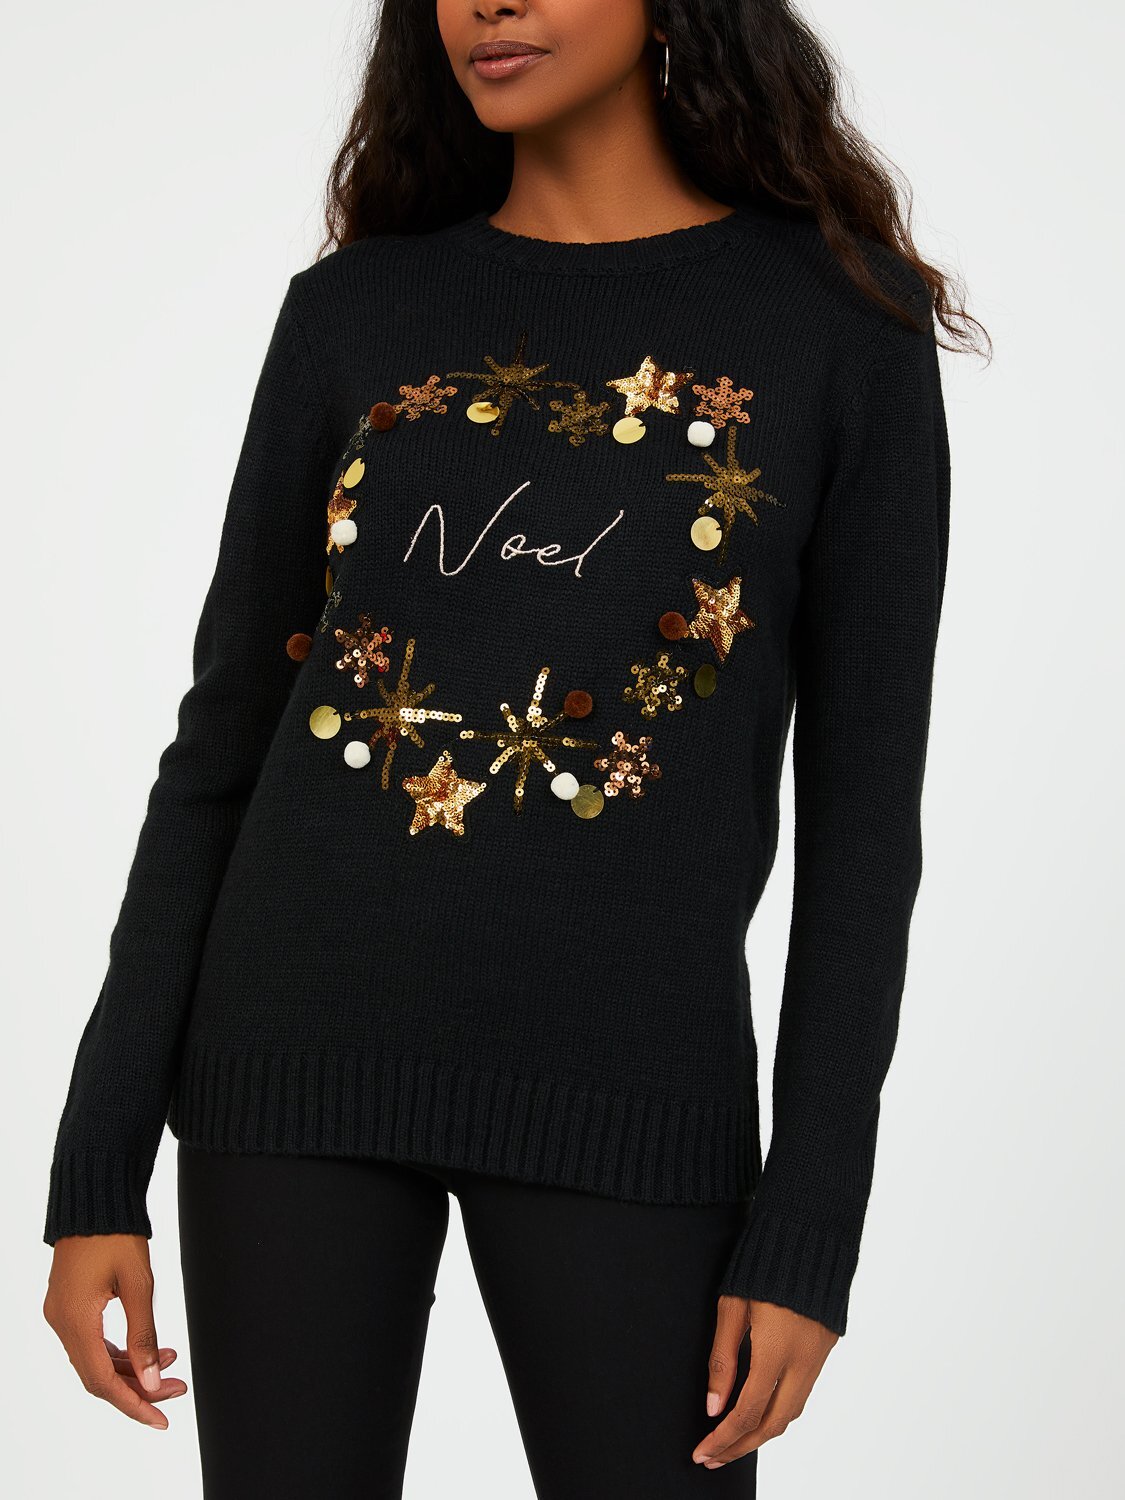 Crew Neck Noel & Xmas Wreath Print Sweater .jpg